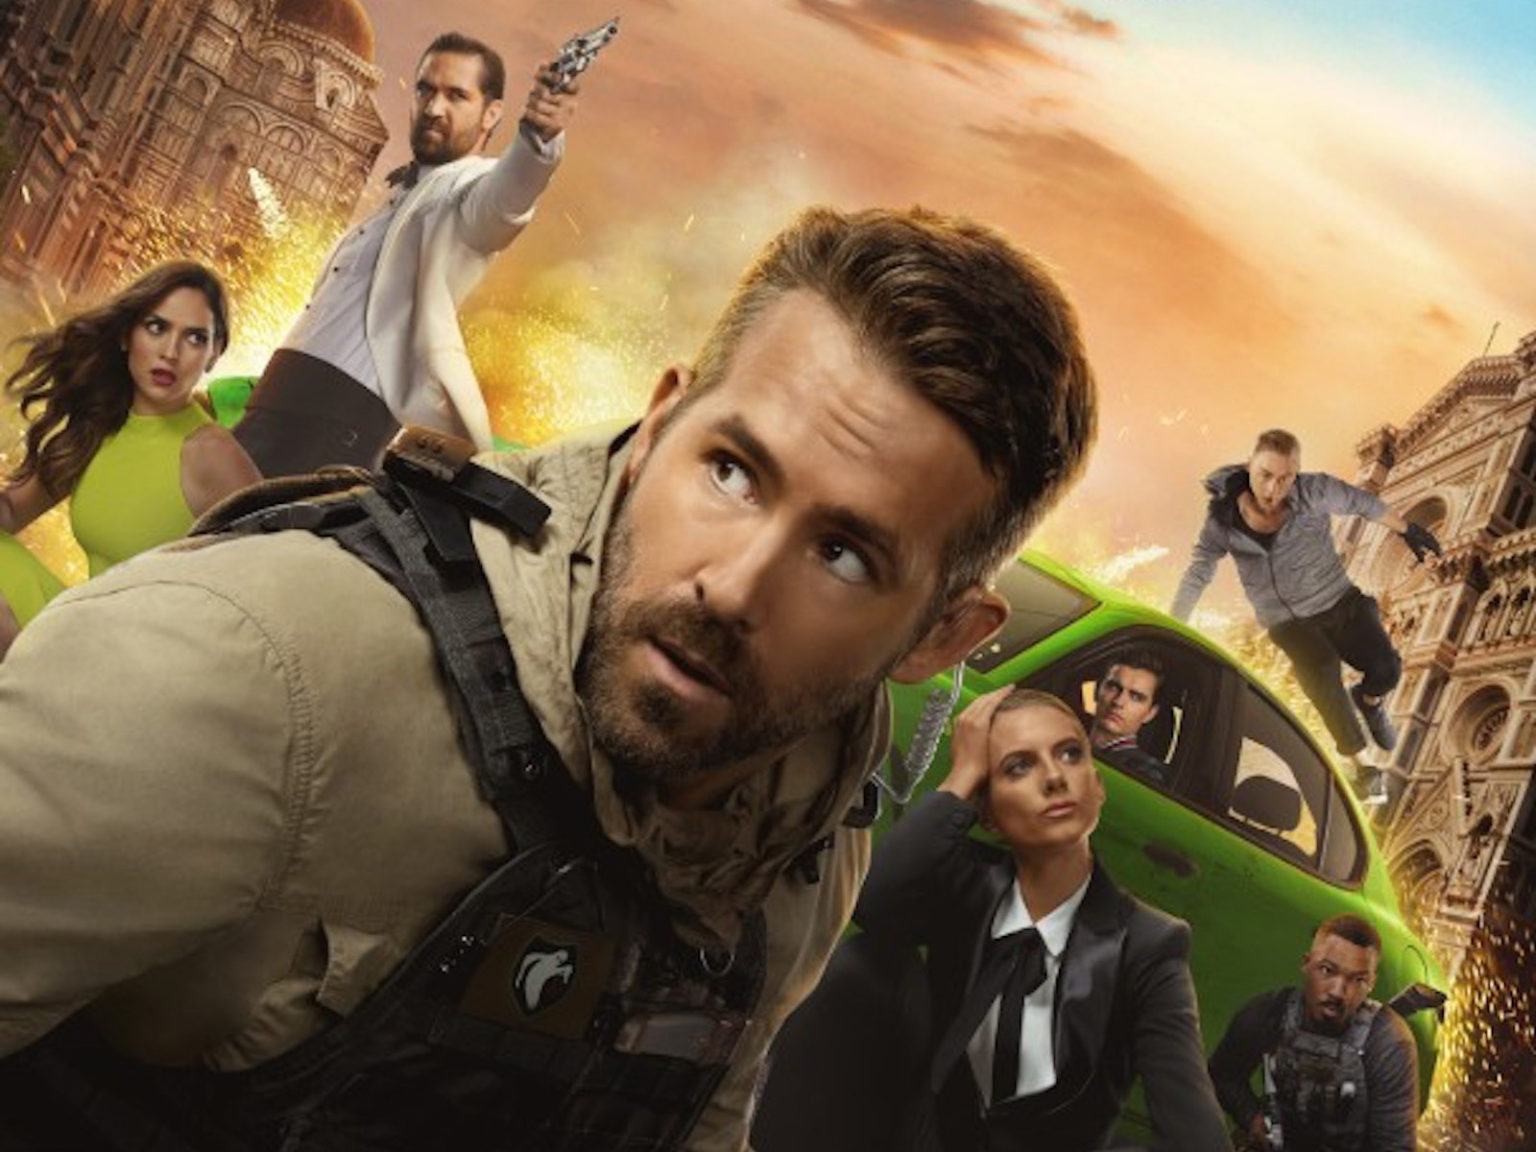 Ryan Reynolds stars in the new Netflix movie "6 Underground".